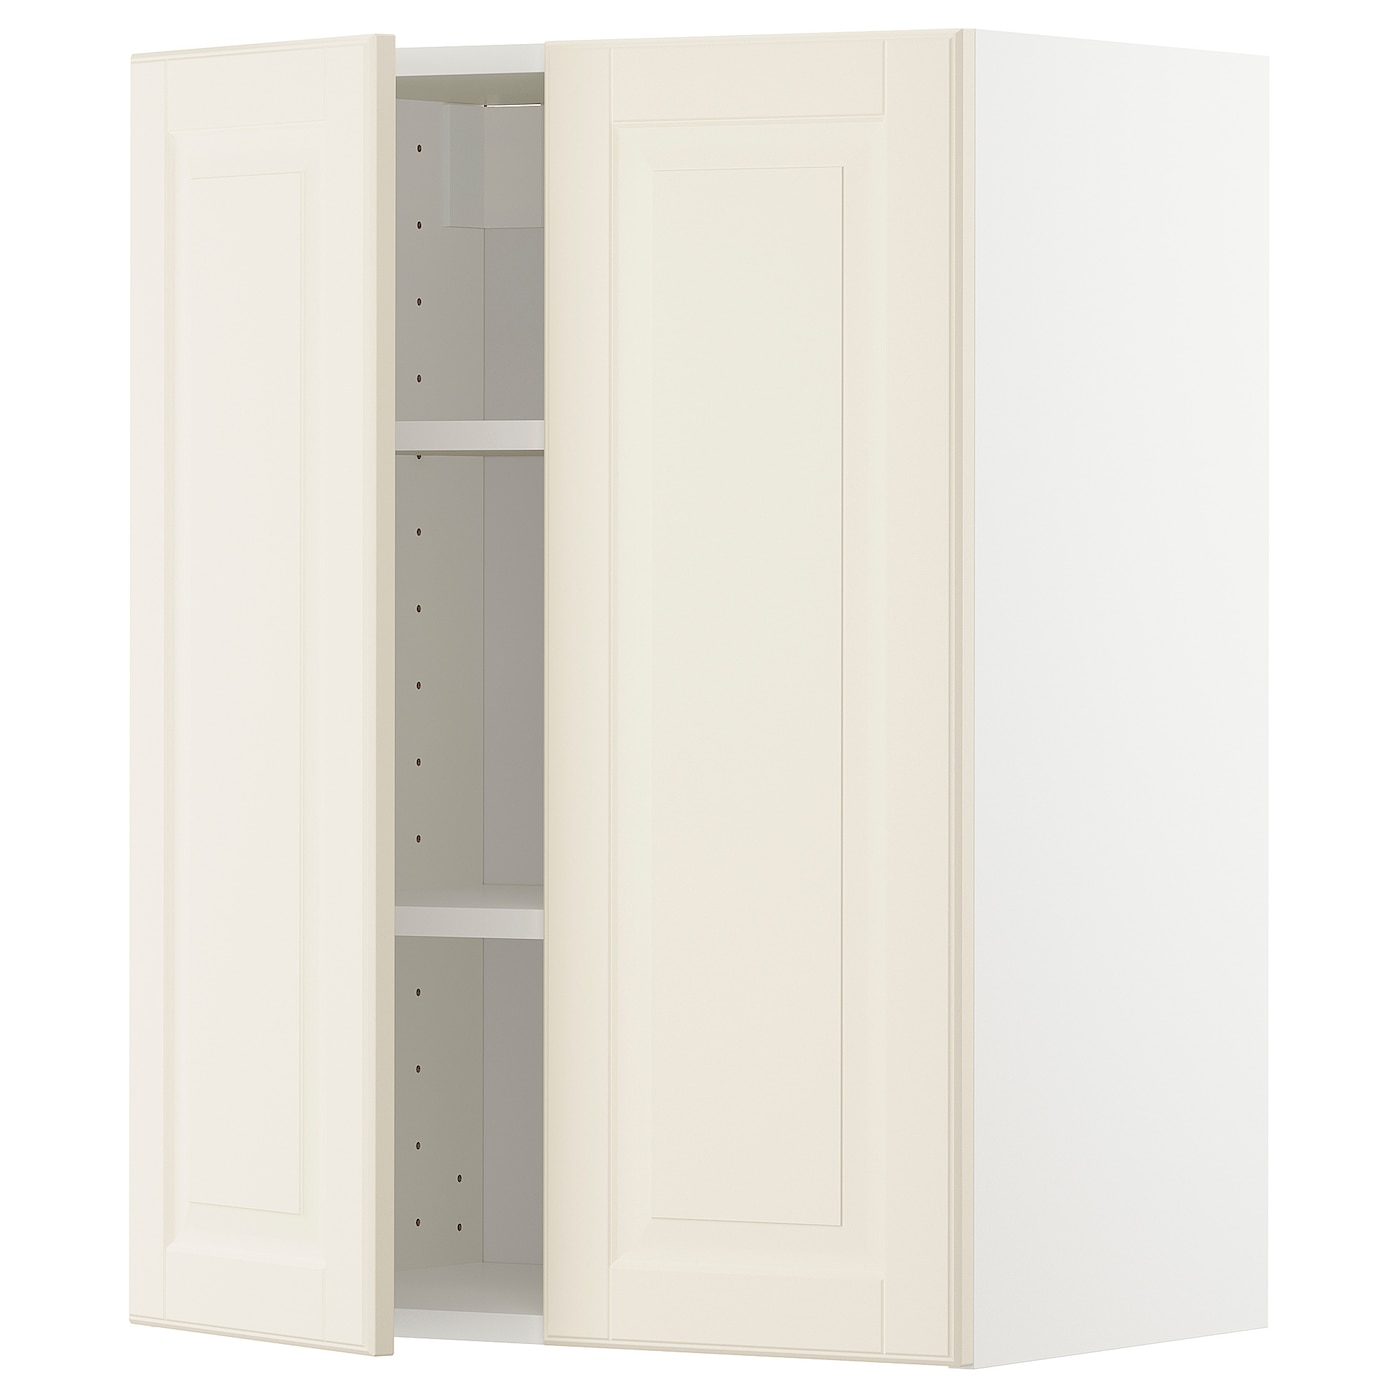 Навесной шкаф с полкой - METOD IKEA/ МЕТОД ИКЕА, 80х60 см, белый/кремовый